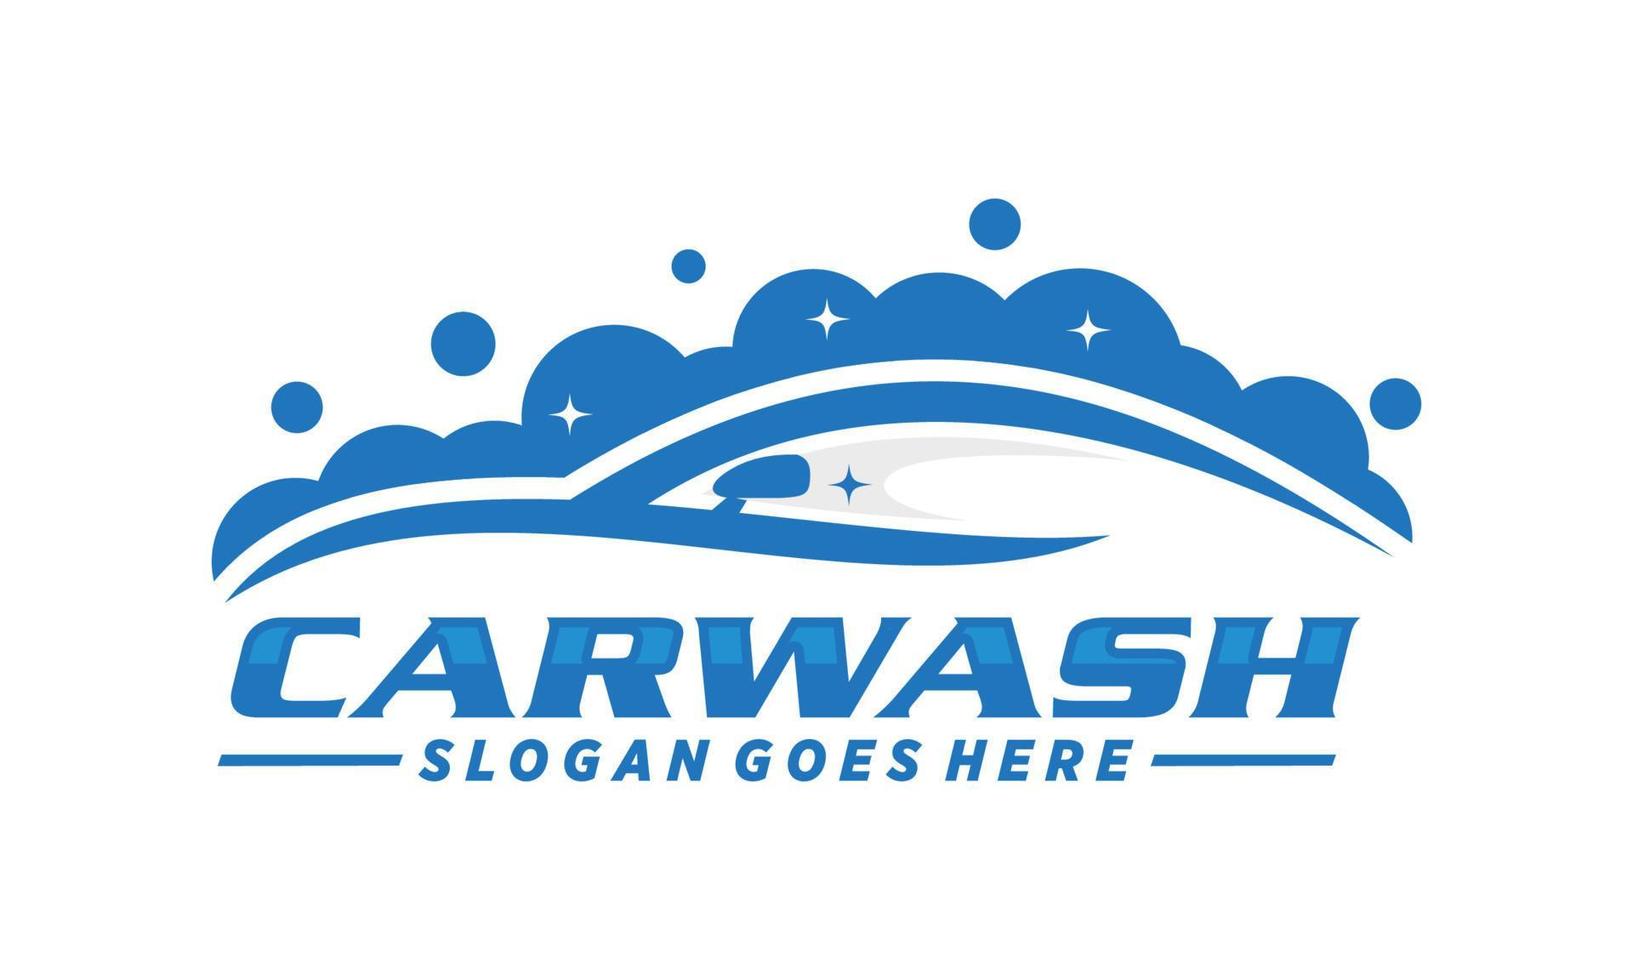 auto lavare logo design vettore